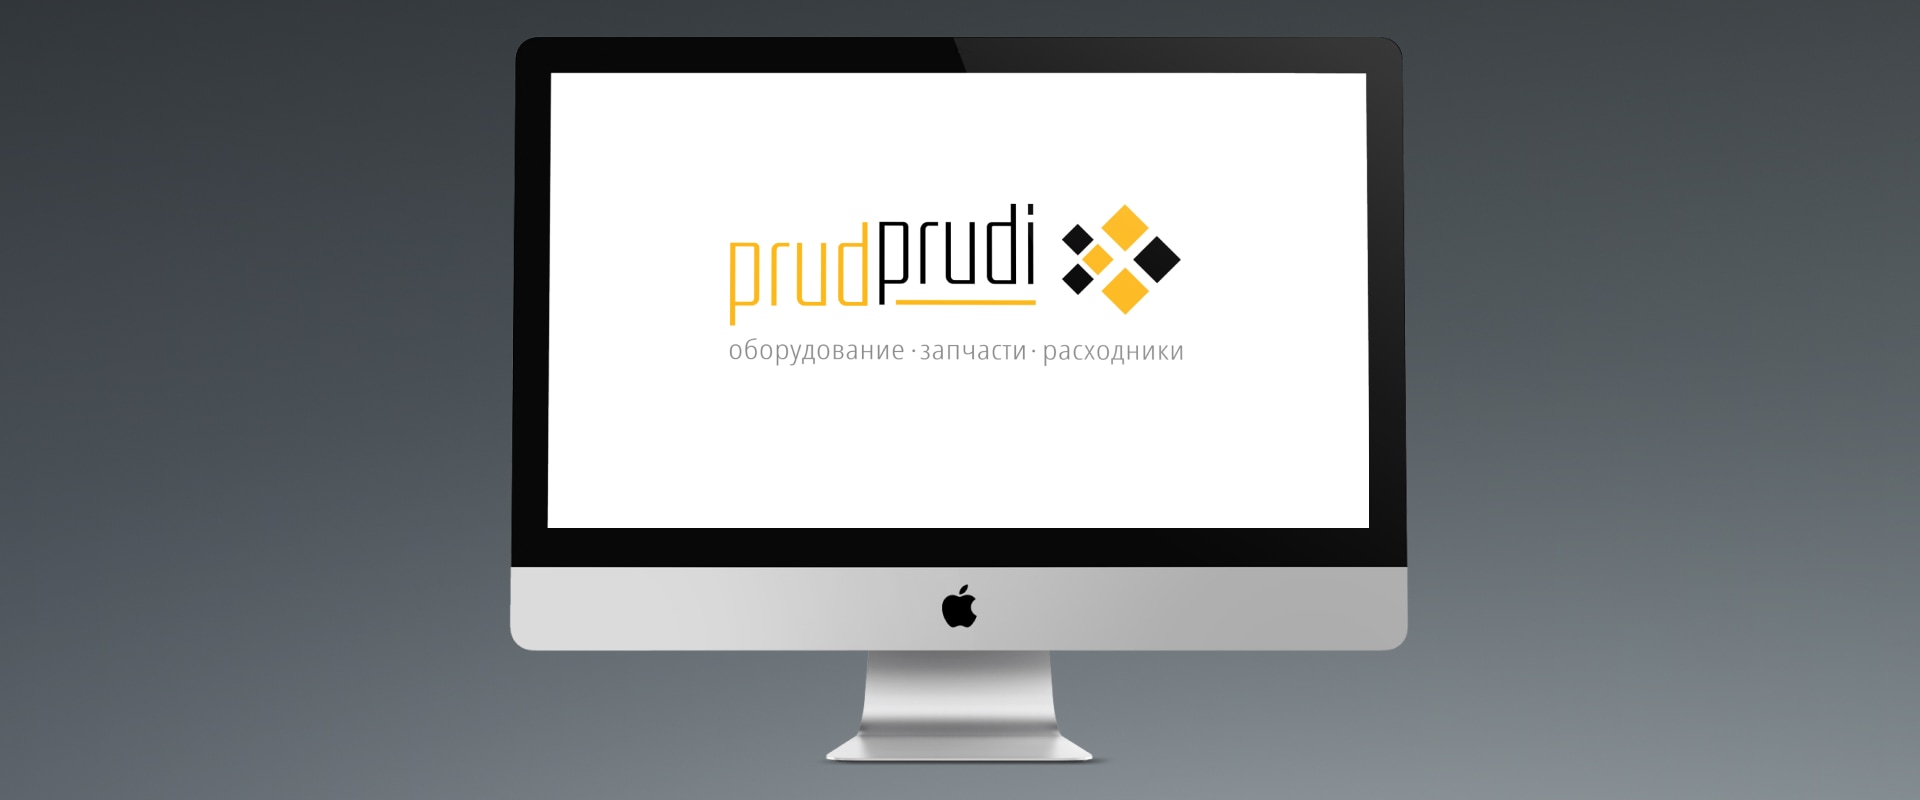 Логотип PrudPrudi